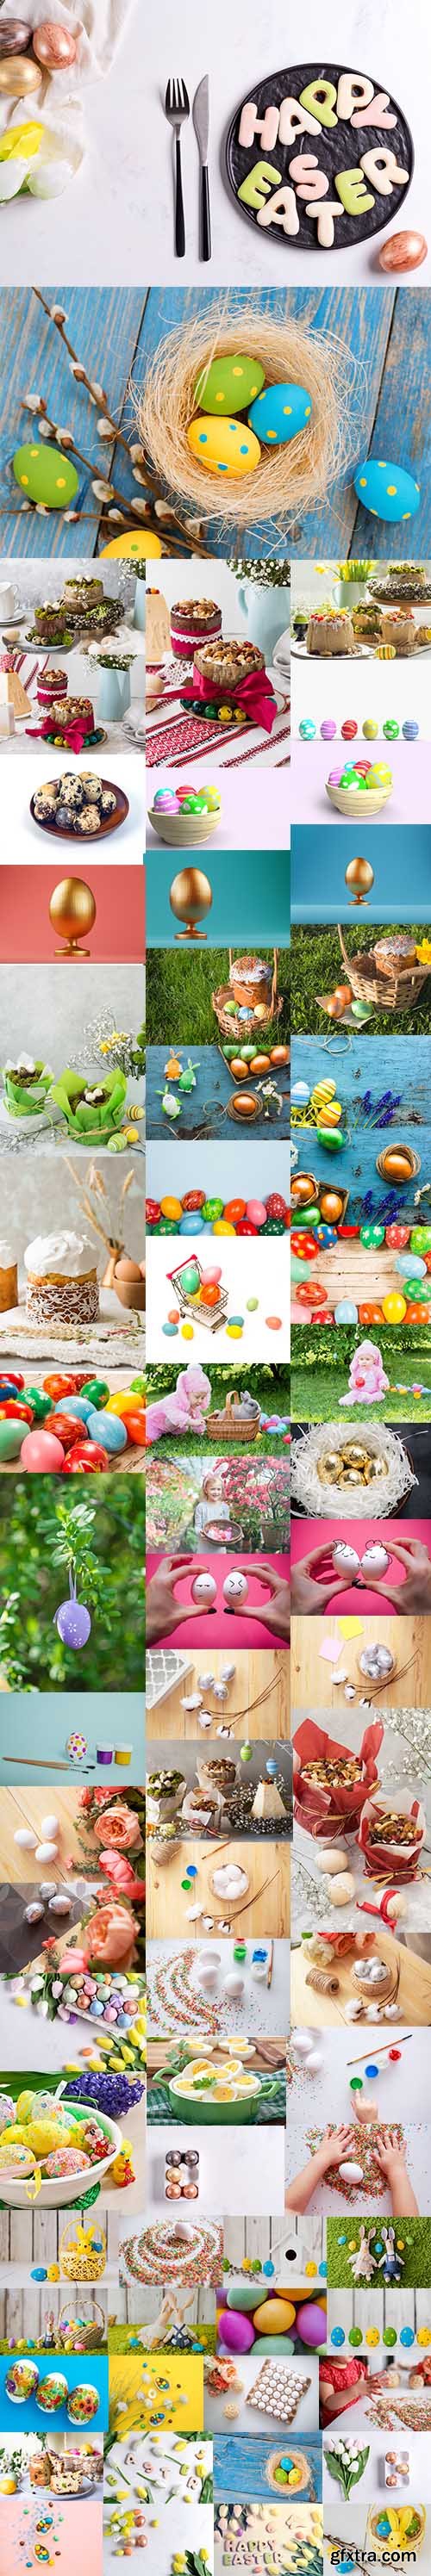 Happy Easter Holiday Photo Bundle - Premium UHQ JPEG Stock Photo